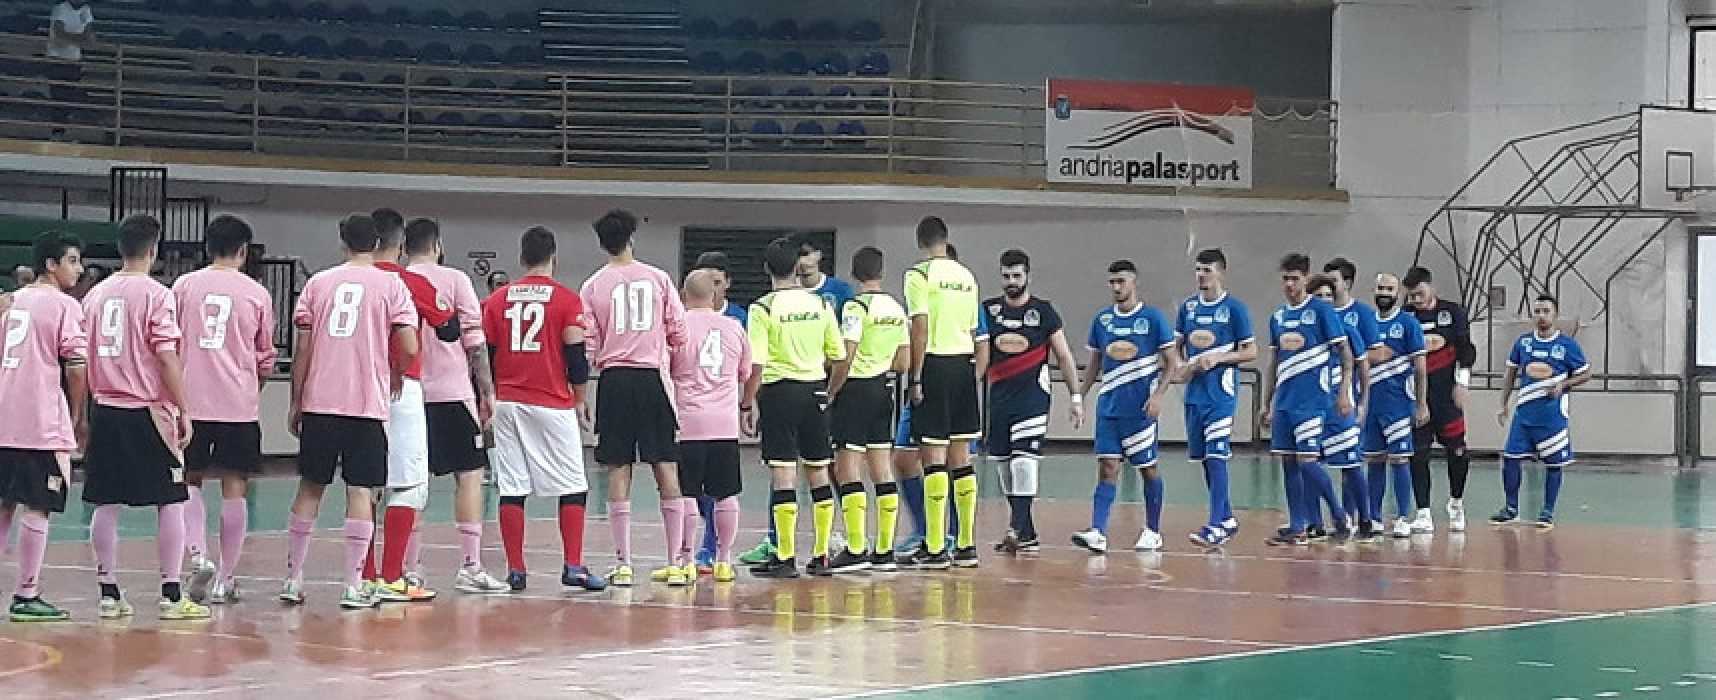 Futbol Cinco, amara sconfitta contro la Futsal Andria